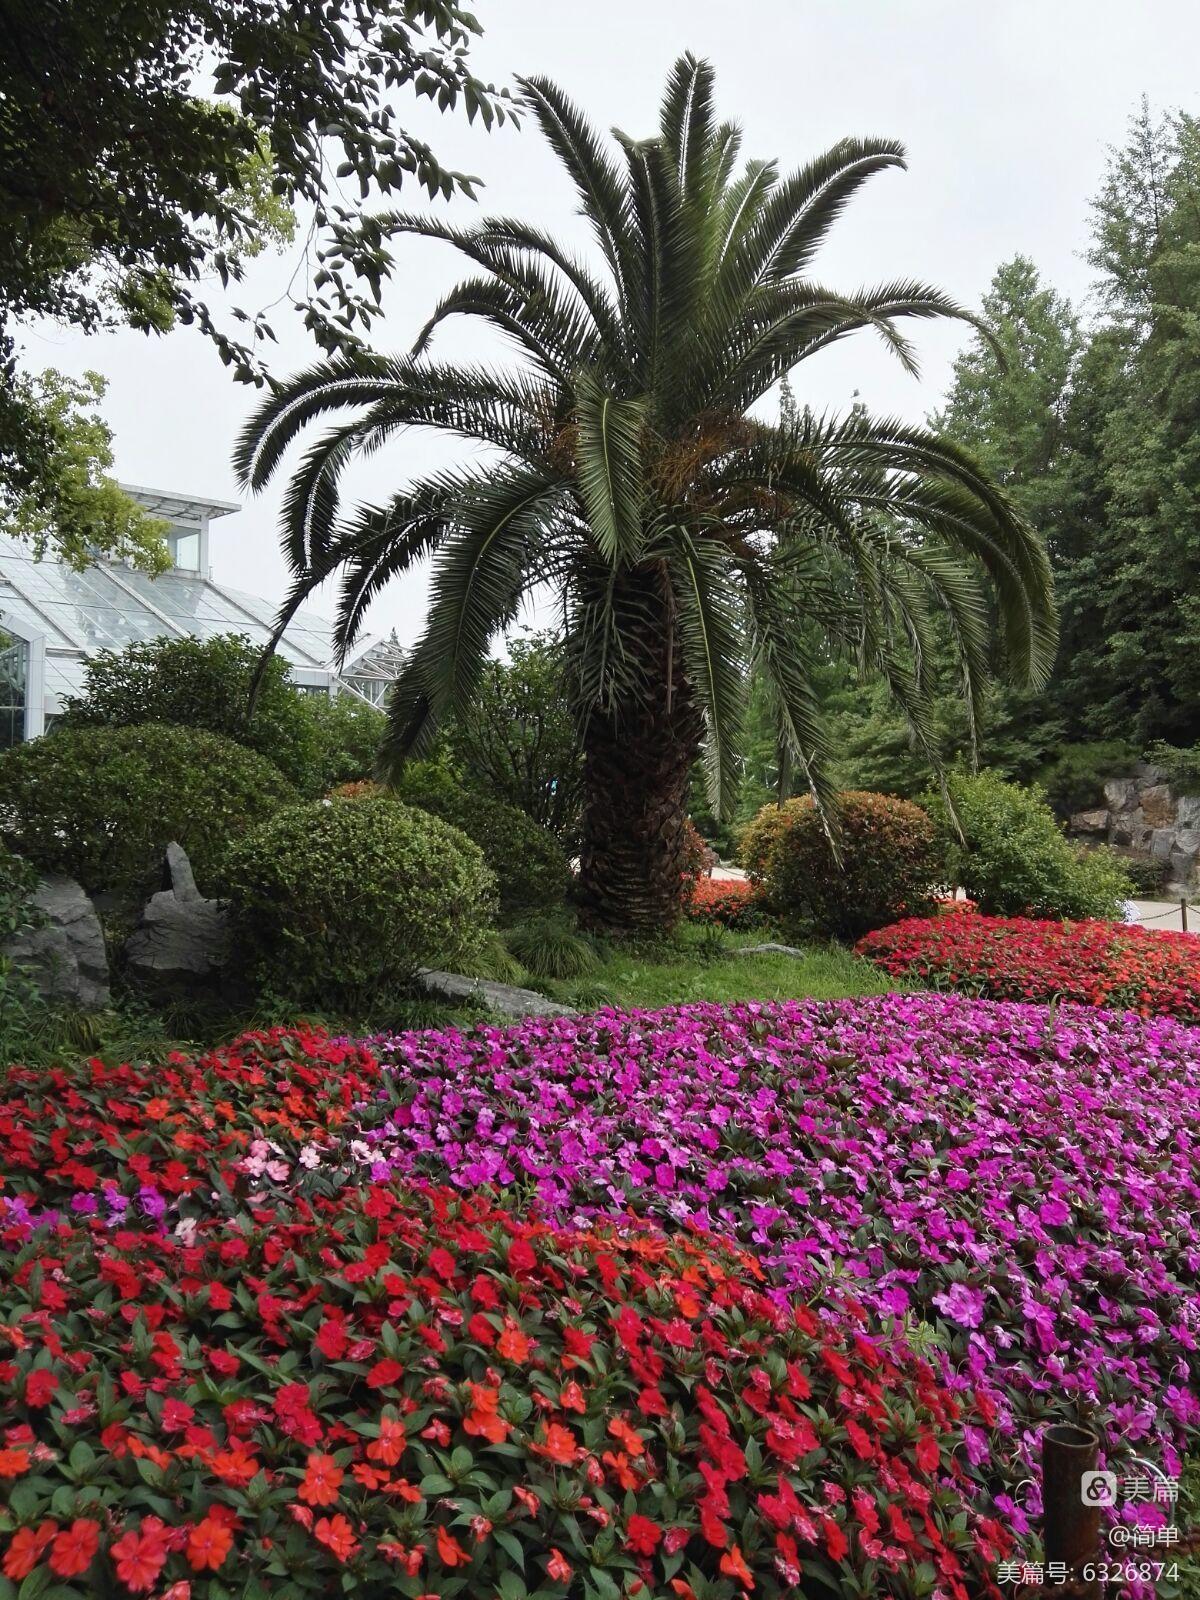 _上海辰山植物园一日游的说说_上海辰山植物园游玩要几个小时